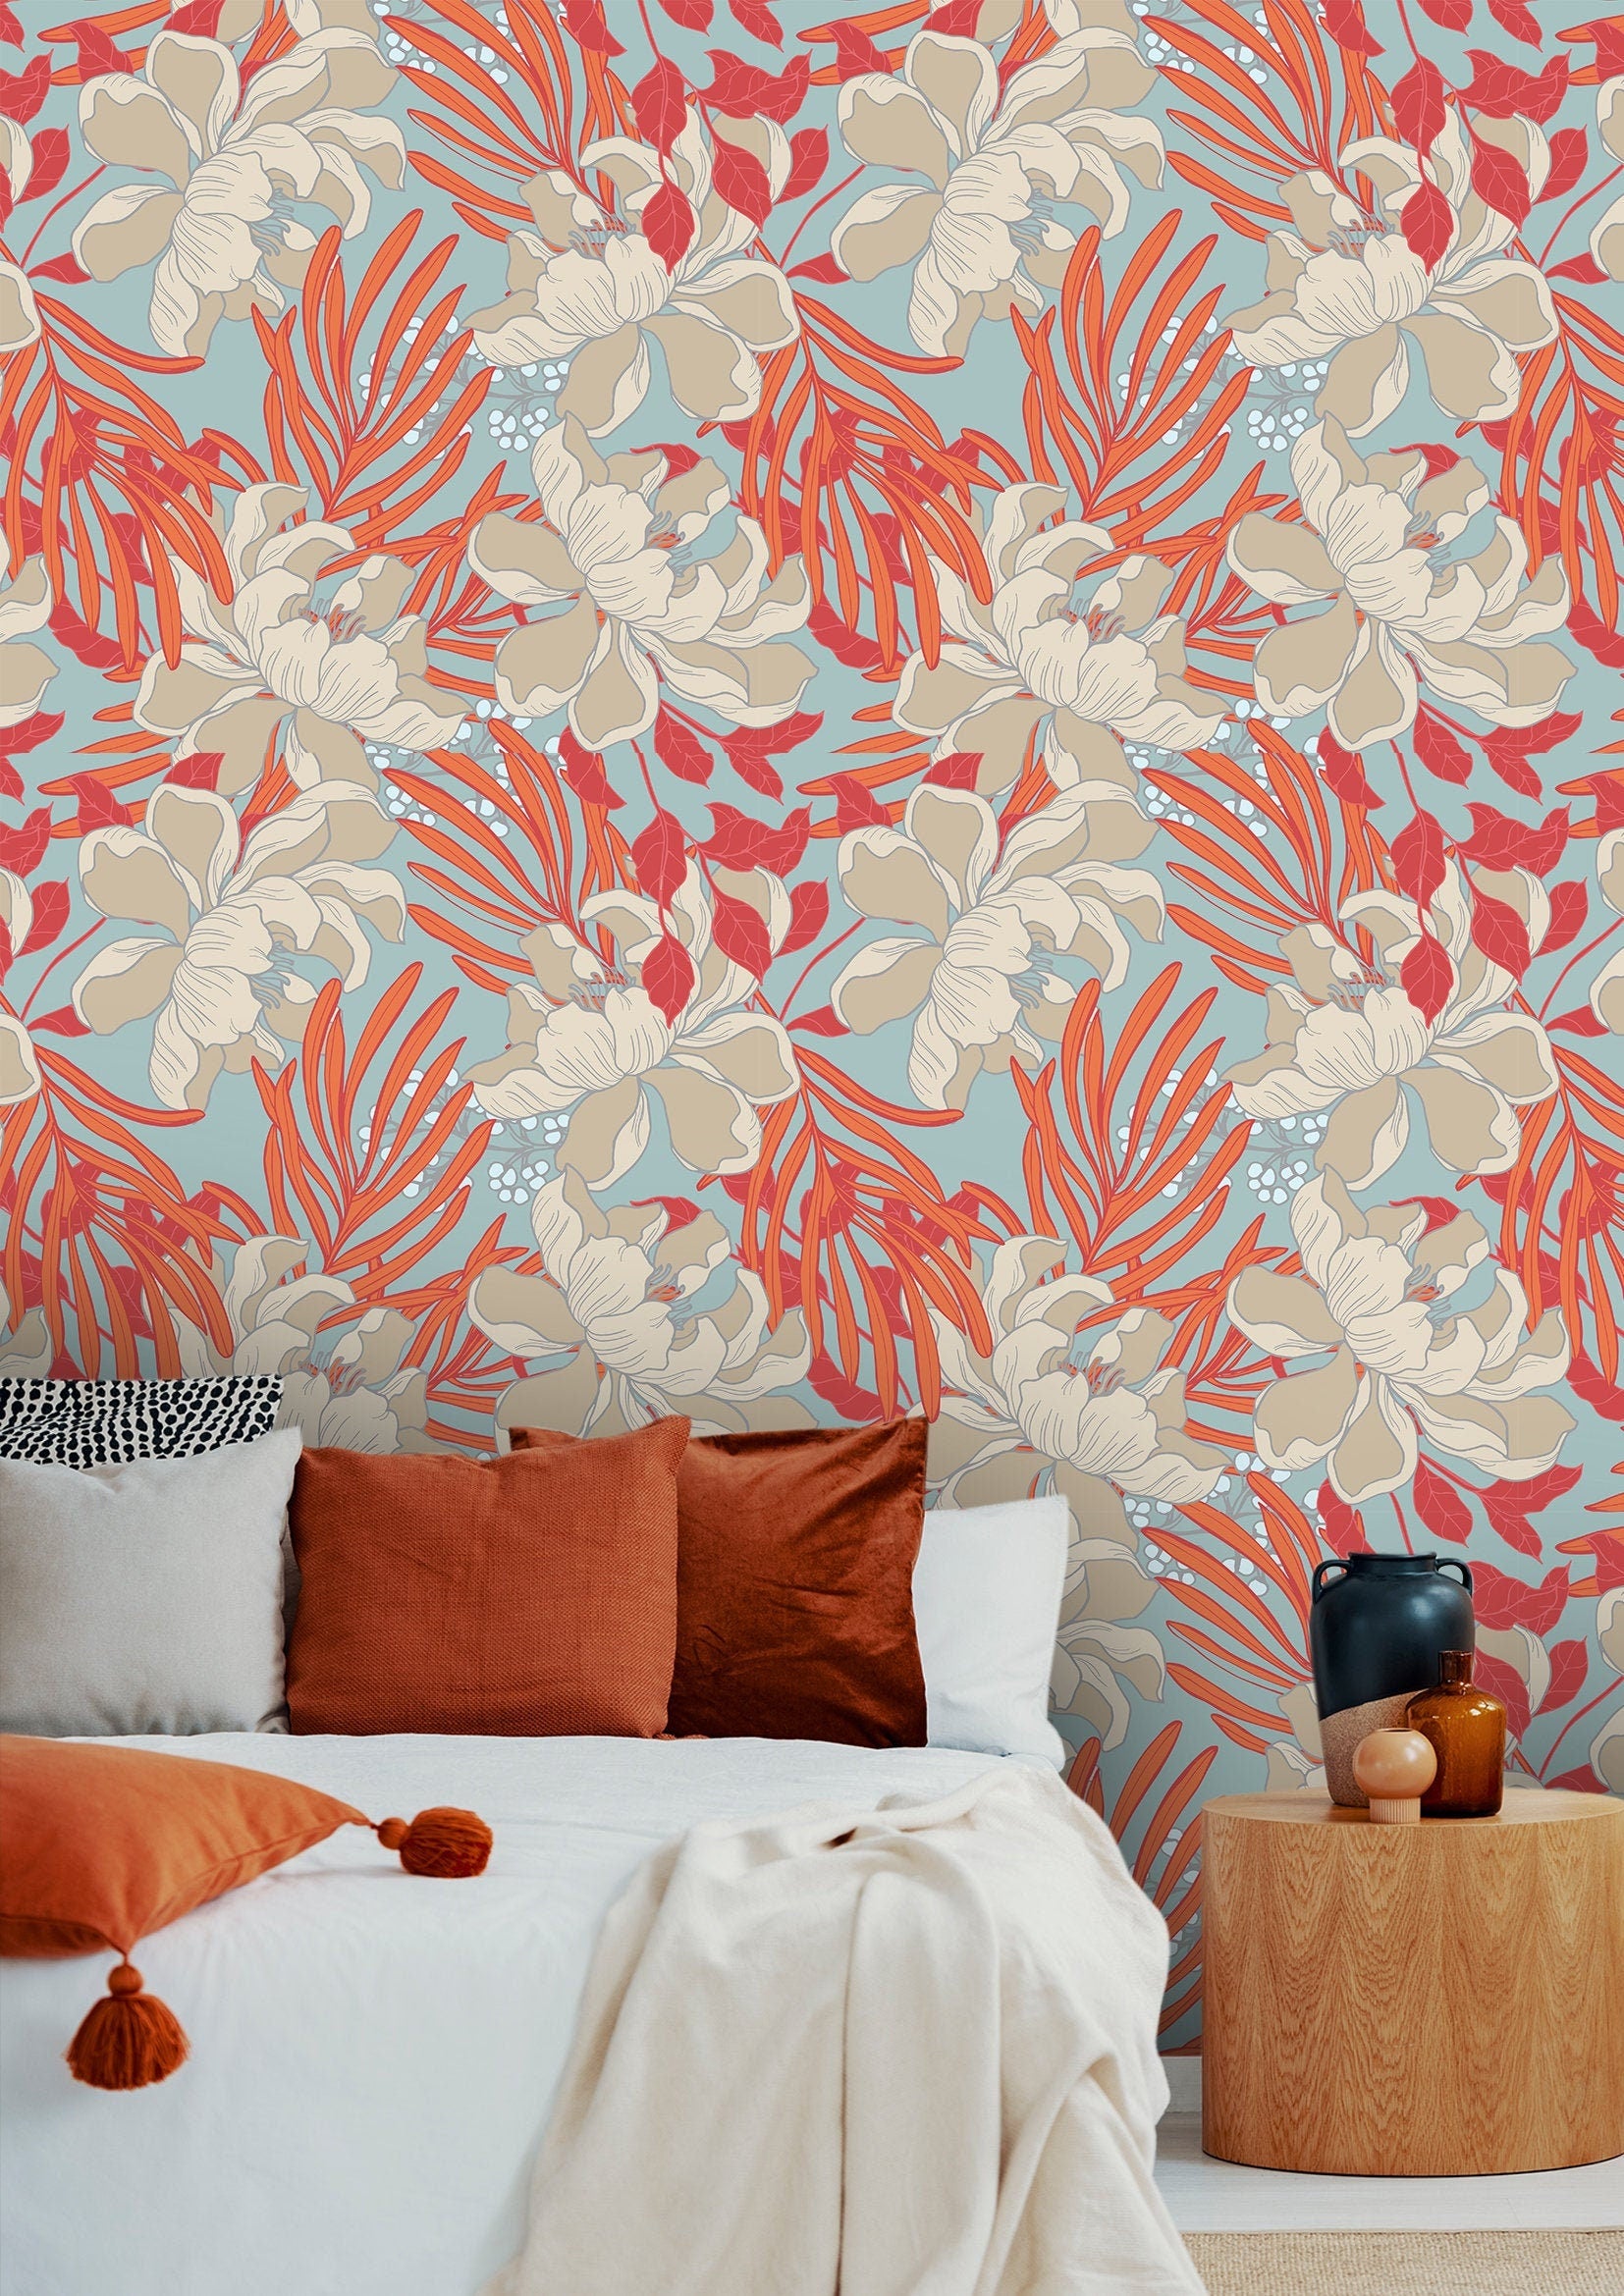 Orange Floral Wallpaper | Adhesive Wallpaper | Peel And Stick Wallpaper | Removable Wallpaper | Wall Paper Peel And Stick Mural 995